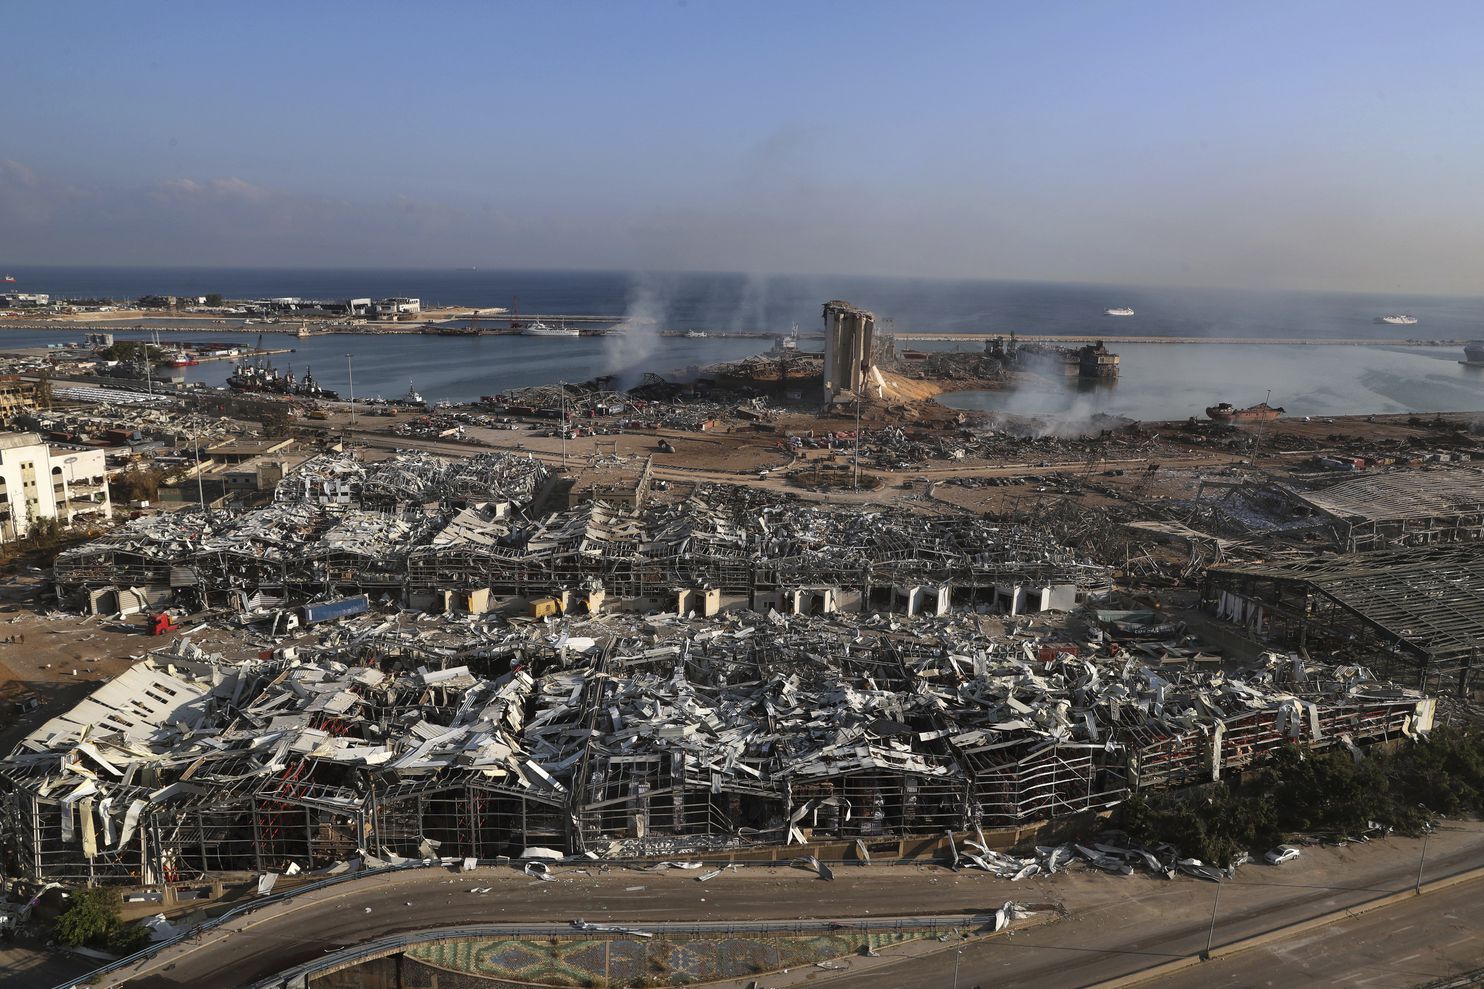 صور القمر الصناعي تظهر حجم الدمار في بيروت بعد الإنفجار